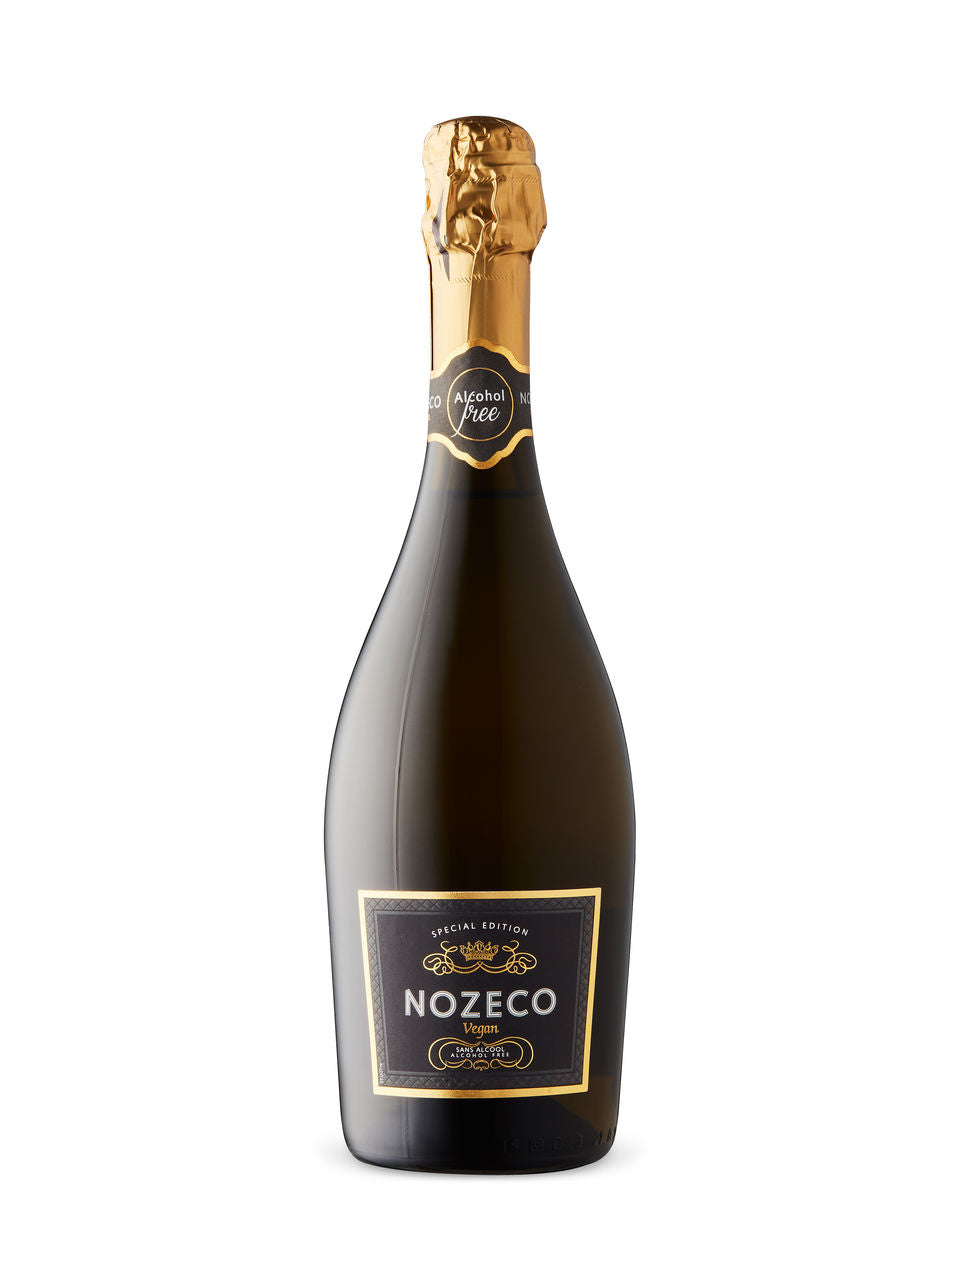 Nozeco - De-Alcoholized 750 ml bottle